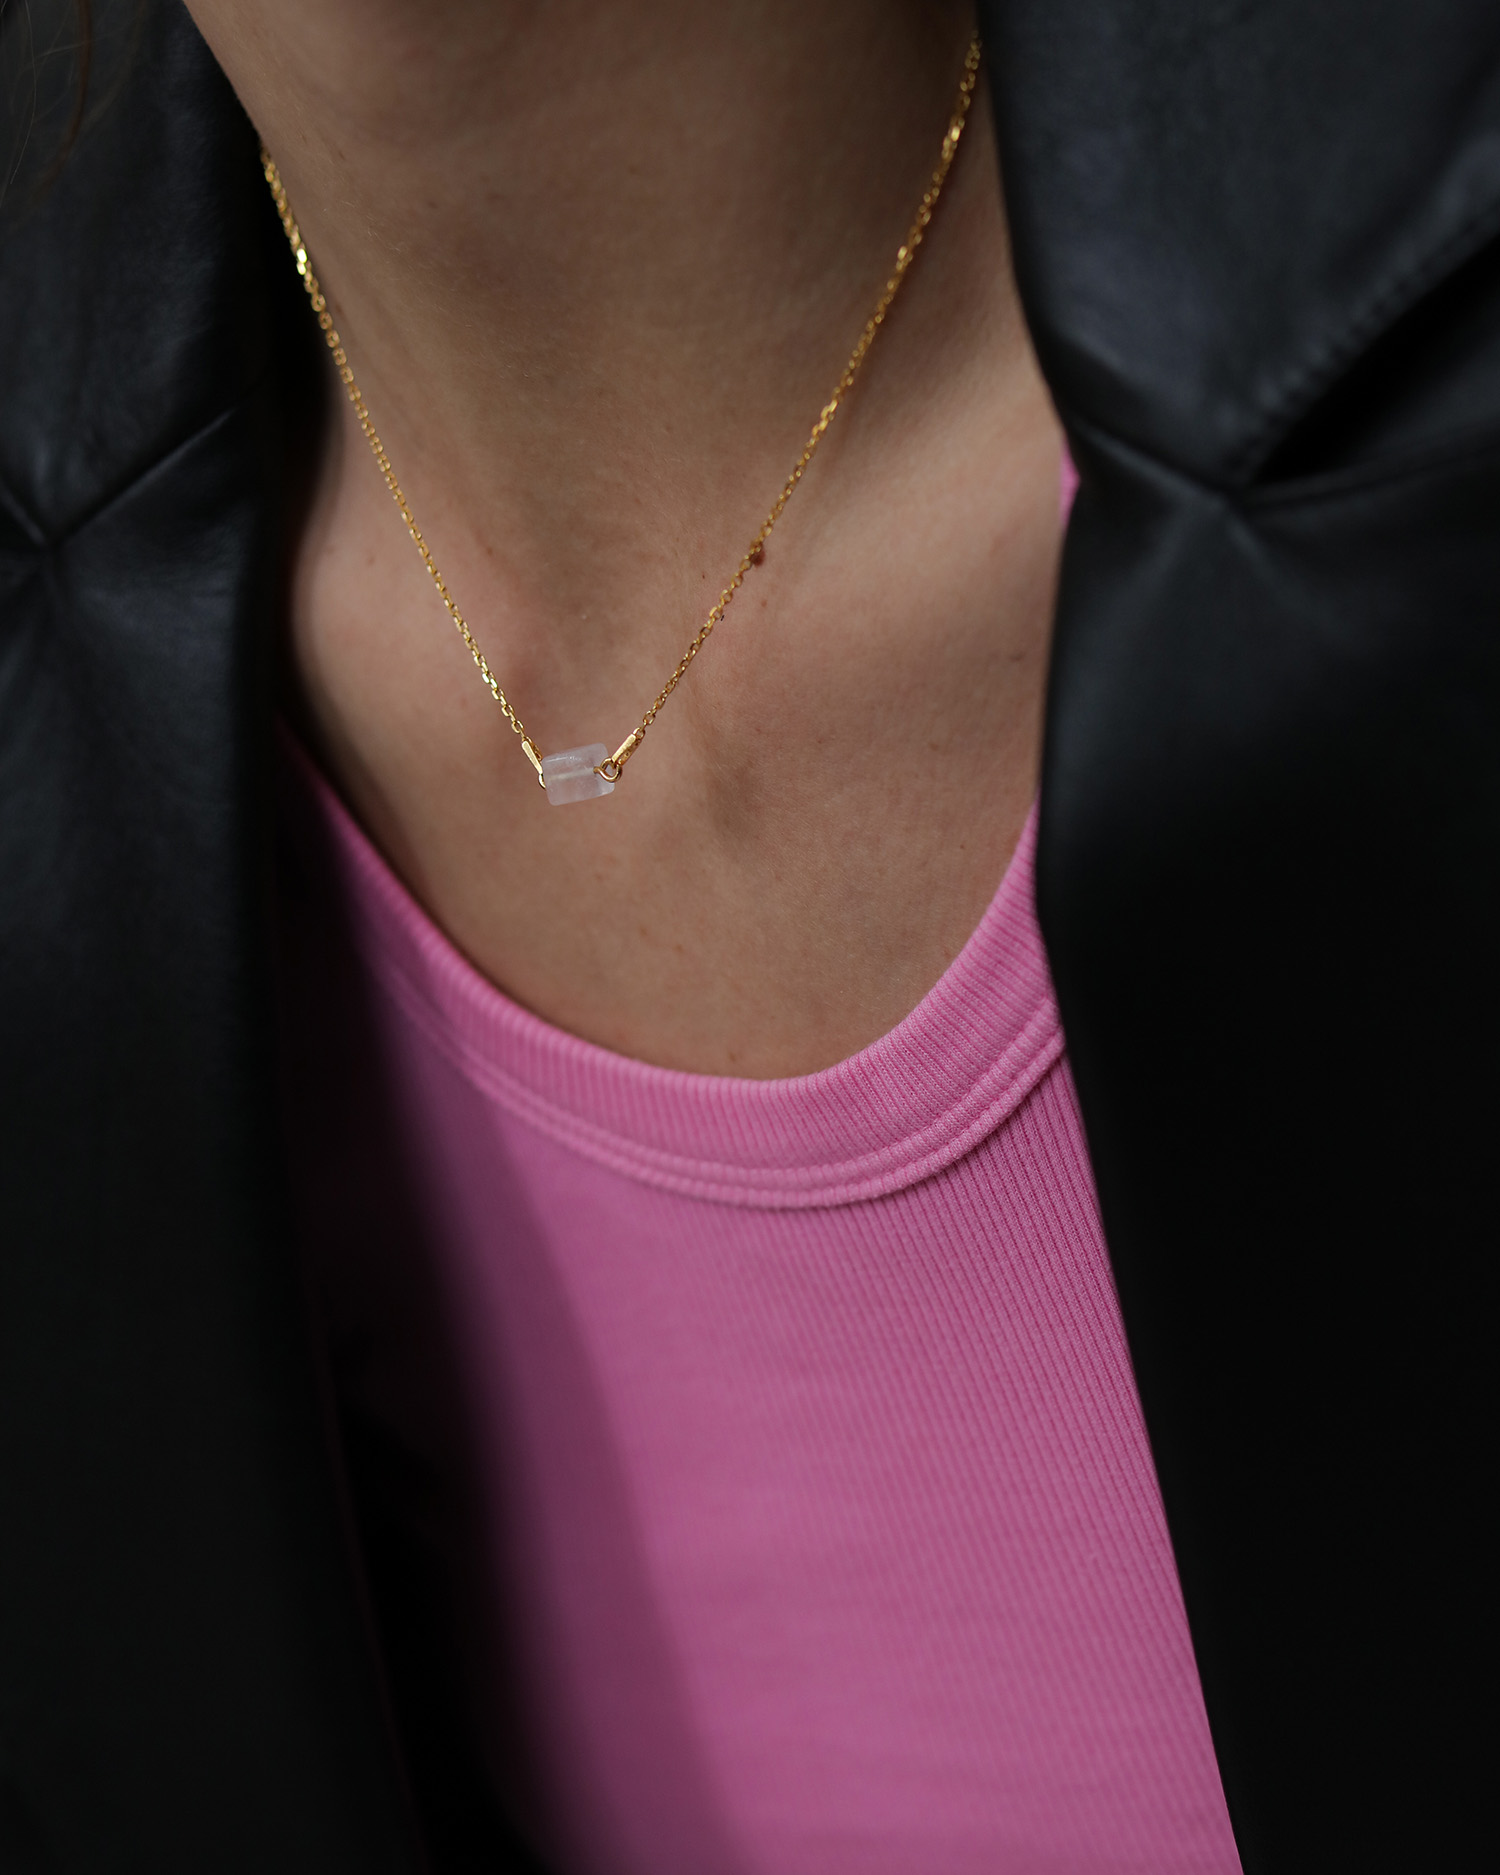 metaformi_design_jewelry_cube_necklace_rose_quartz_model